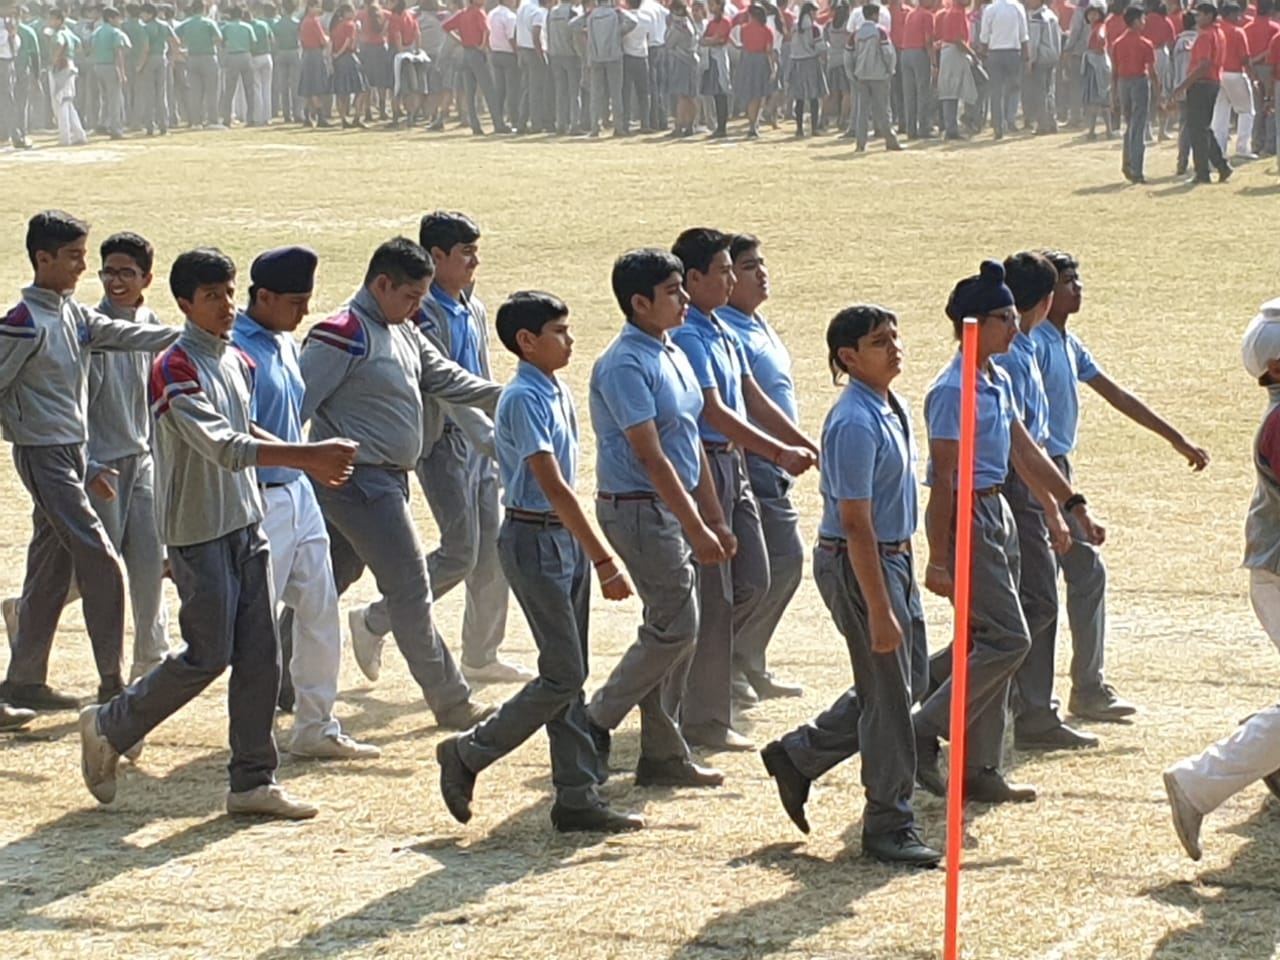 doon sainik school stuents march past